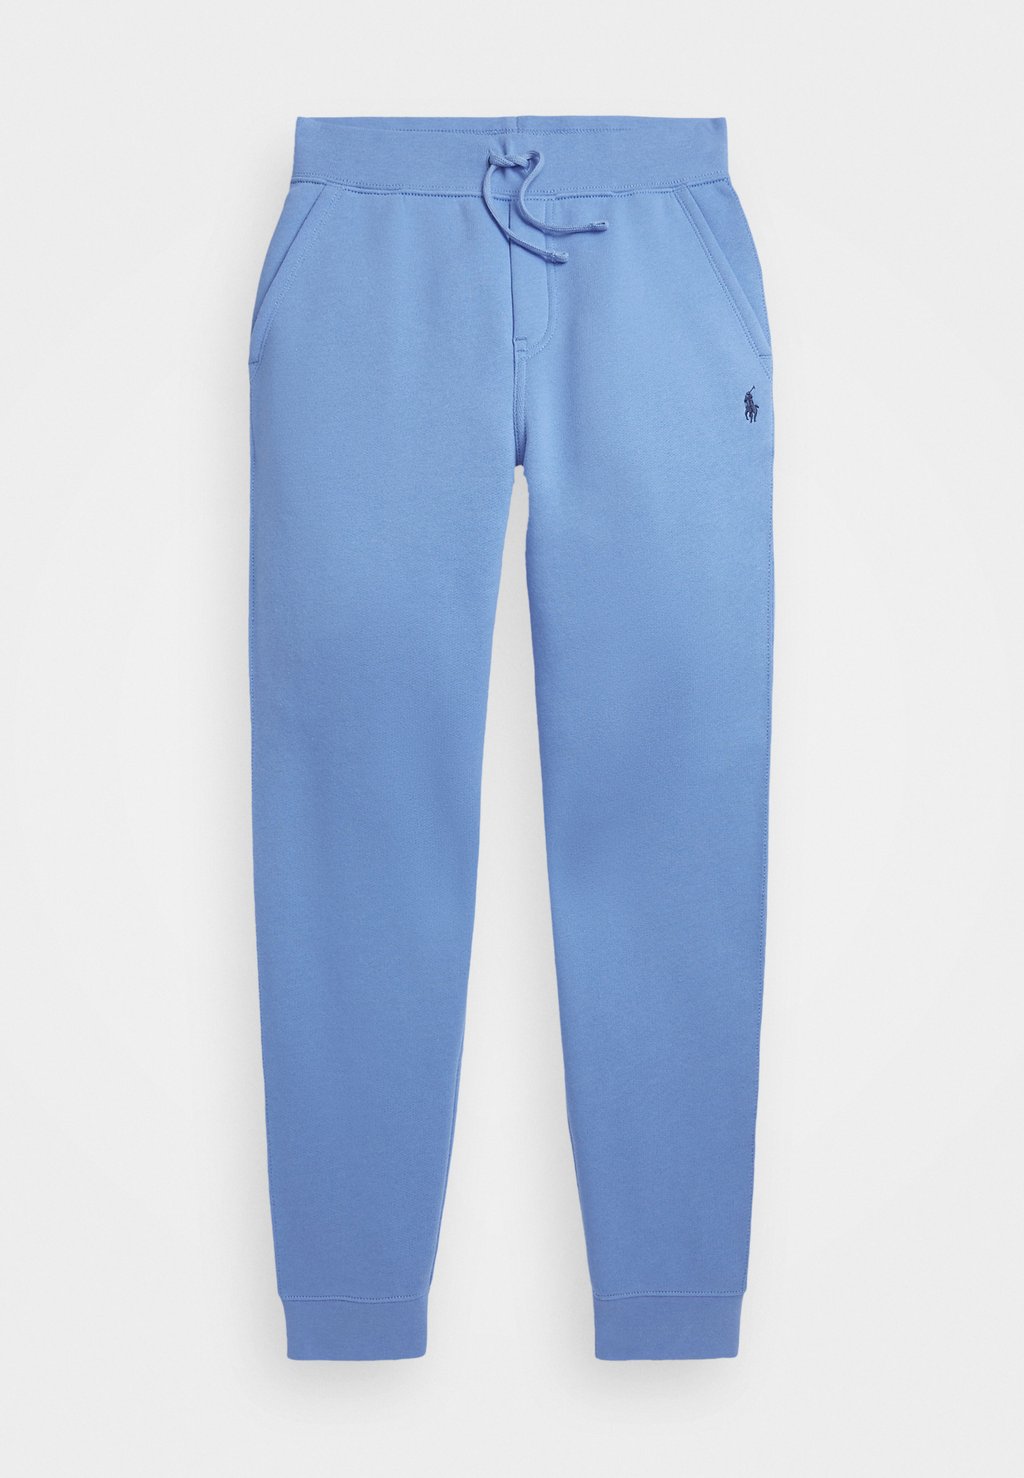 Брюки для бега PANT BOTTOMS Polo Ralph Lauren, цвет summer blue 2021 summer new polo shirt men